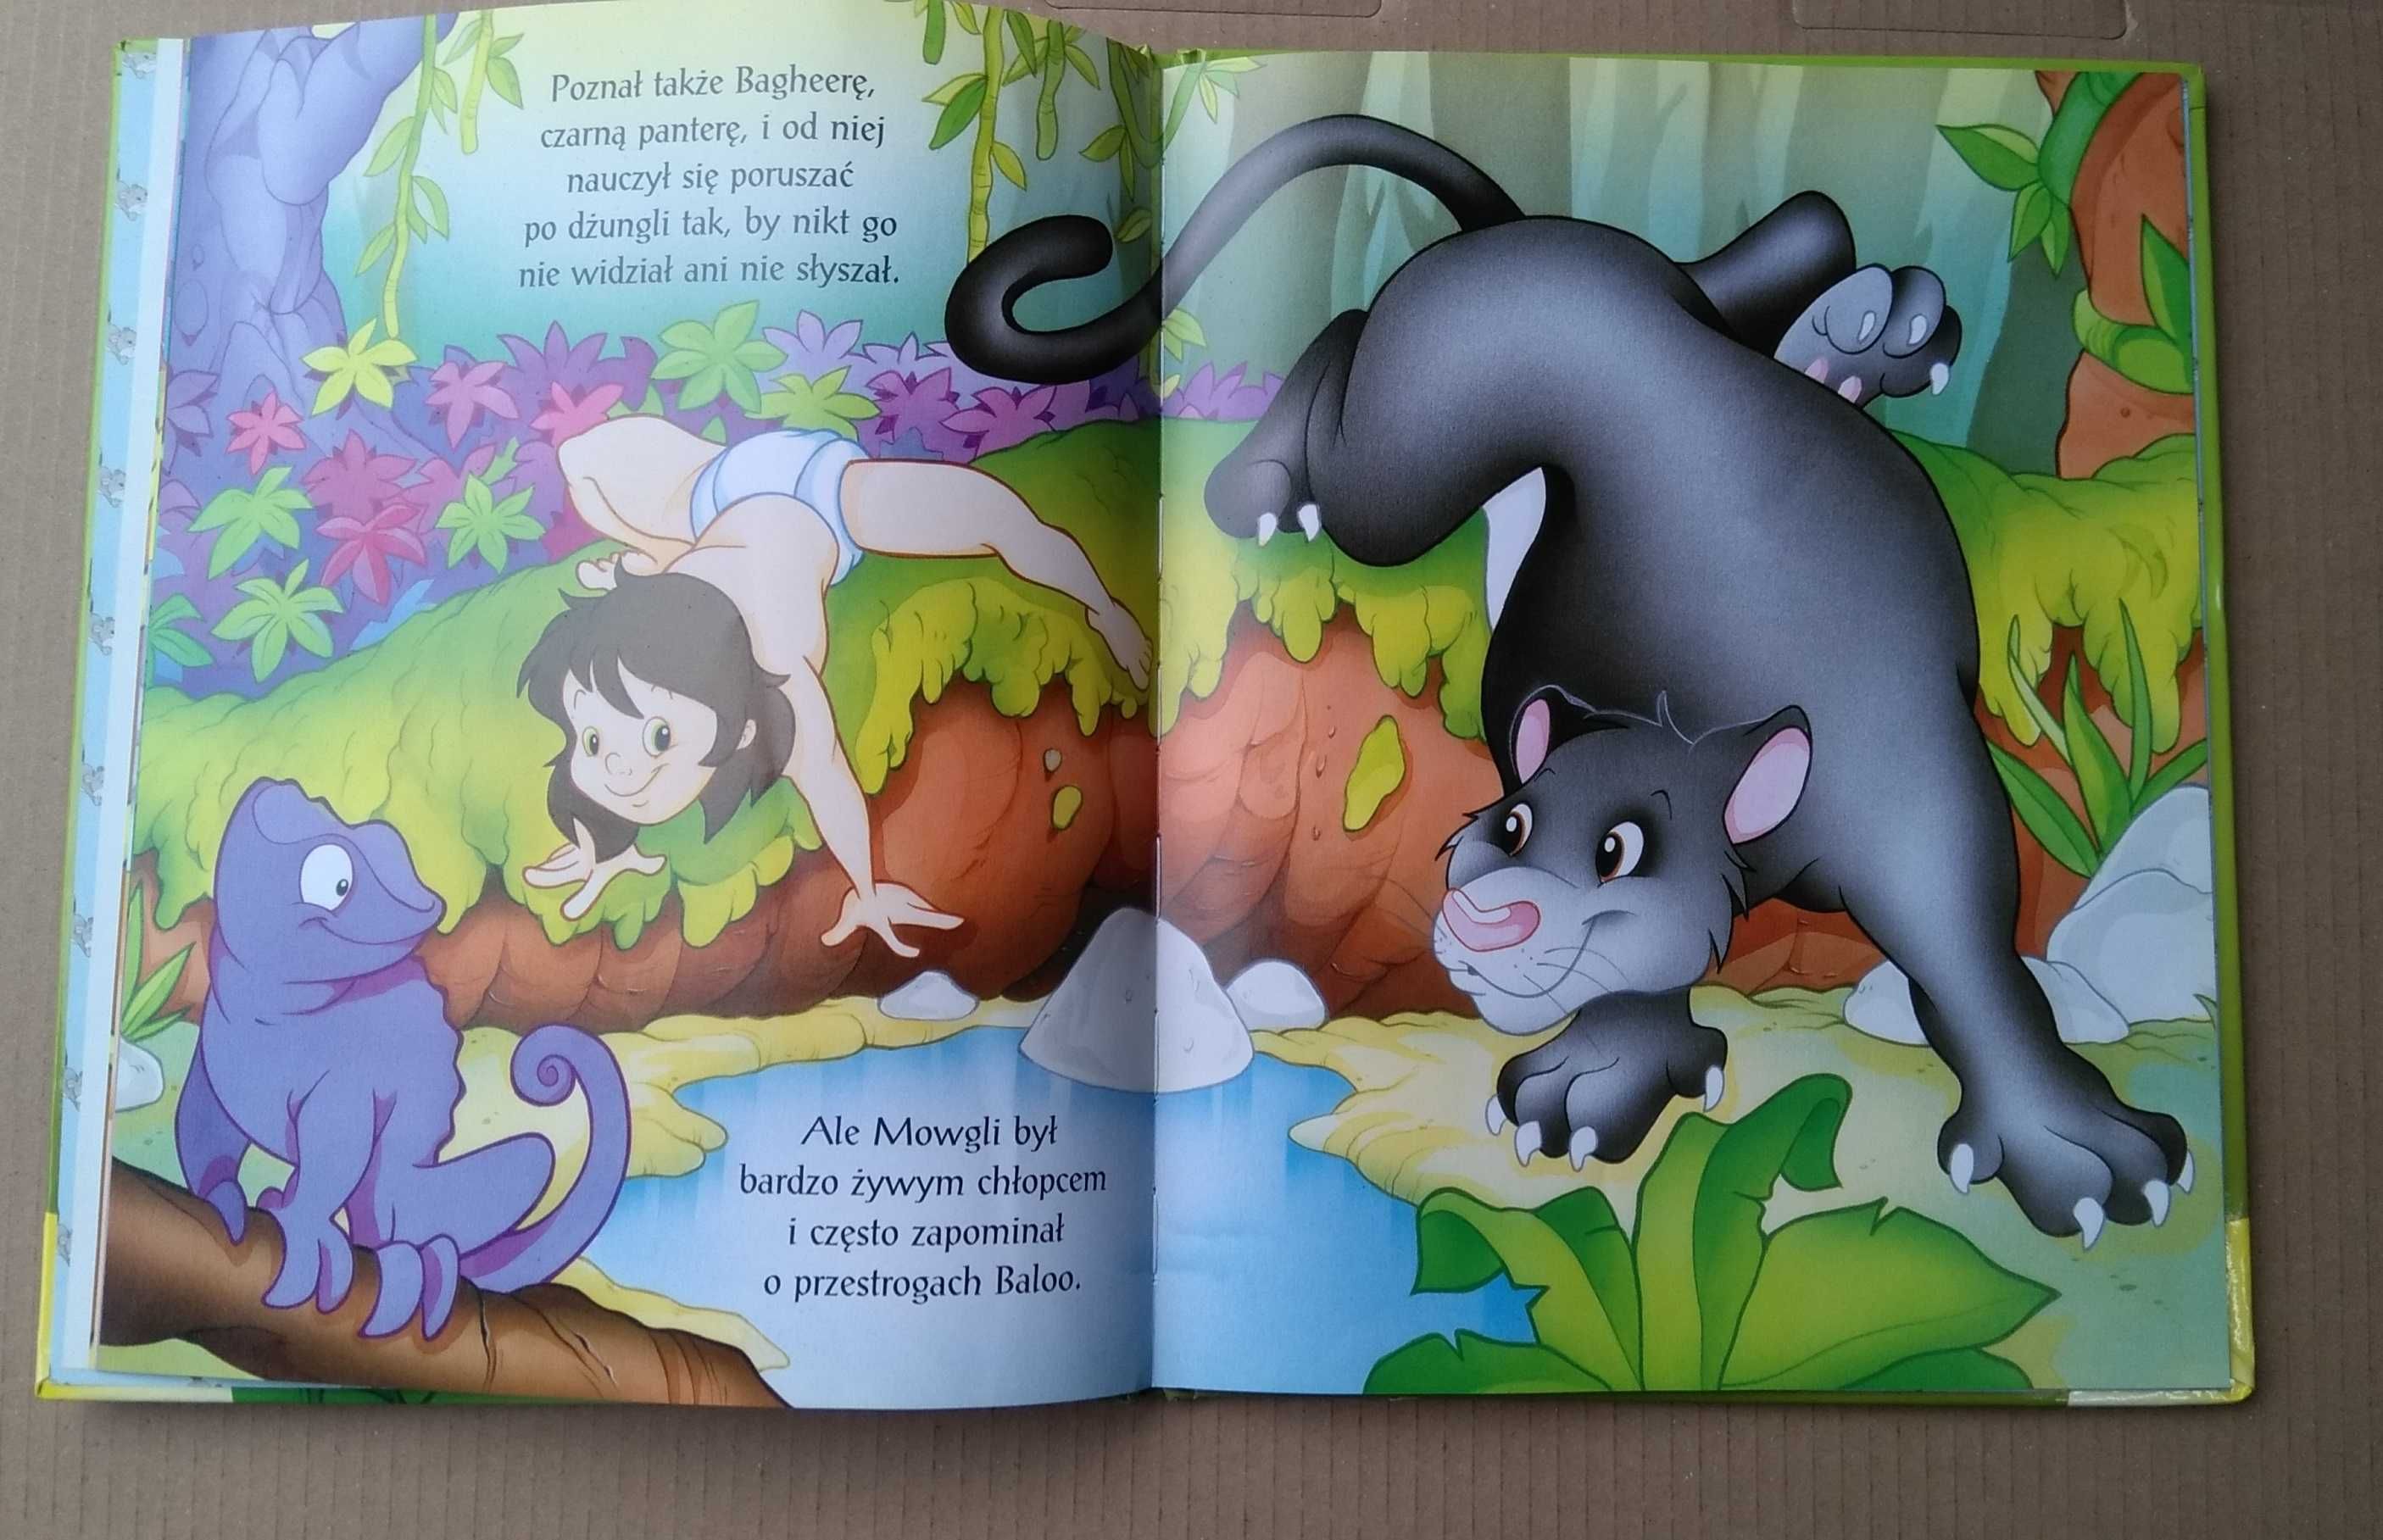 Księga dżungli książka dla dzieci